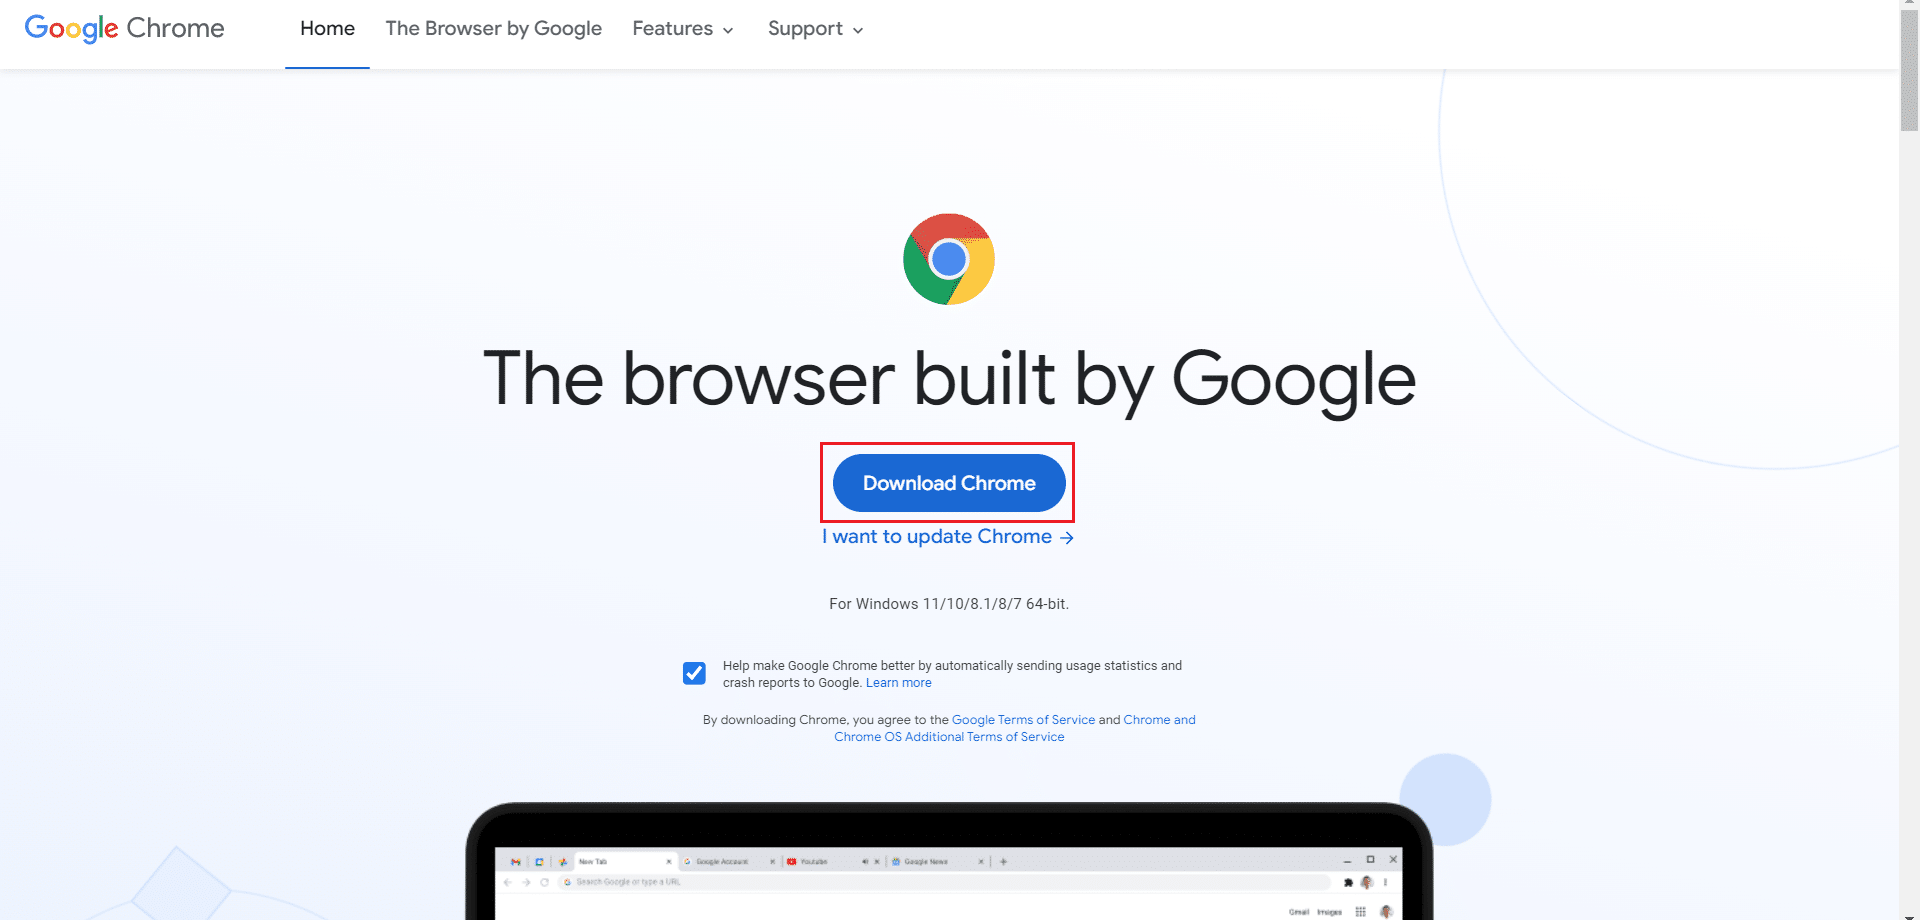 Laden Sie Google Chrome von der offiziellen Website herunter. Fix Chrome hatte nicht mehr genügend Speicher